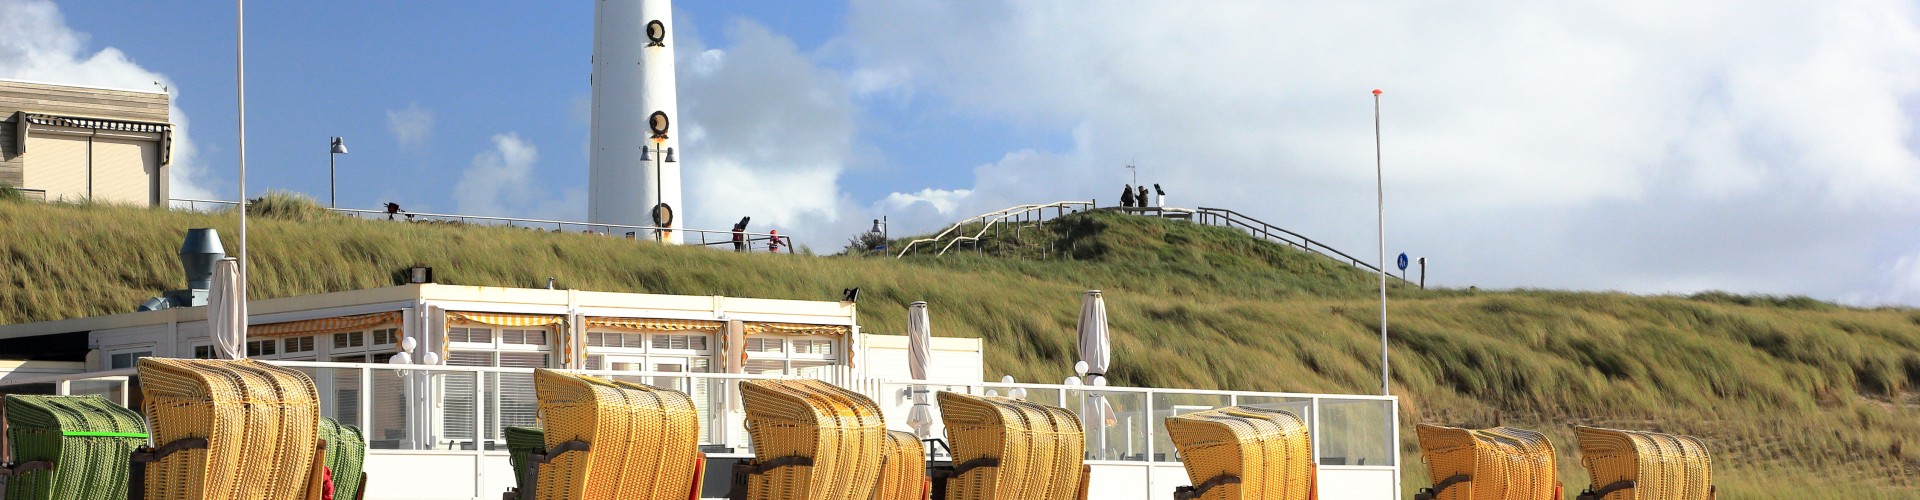 strandstoelen en vuurtoren hotel in Egmond